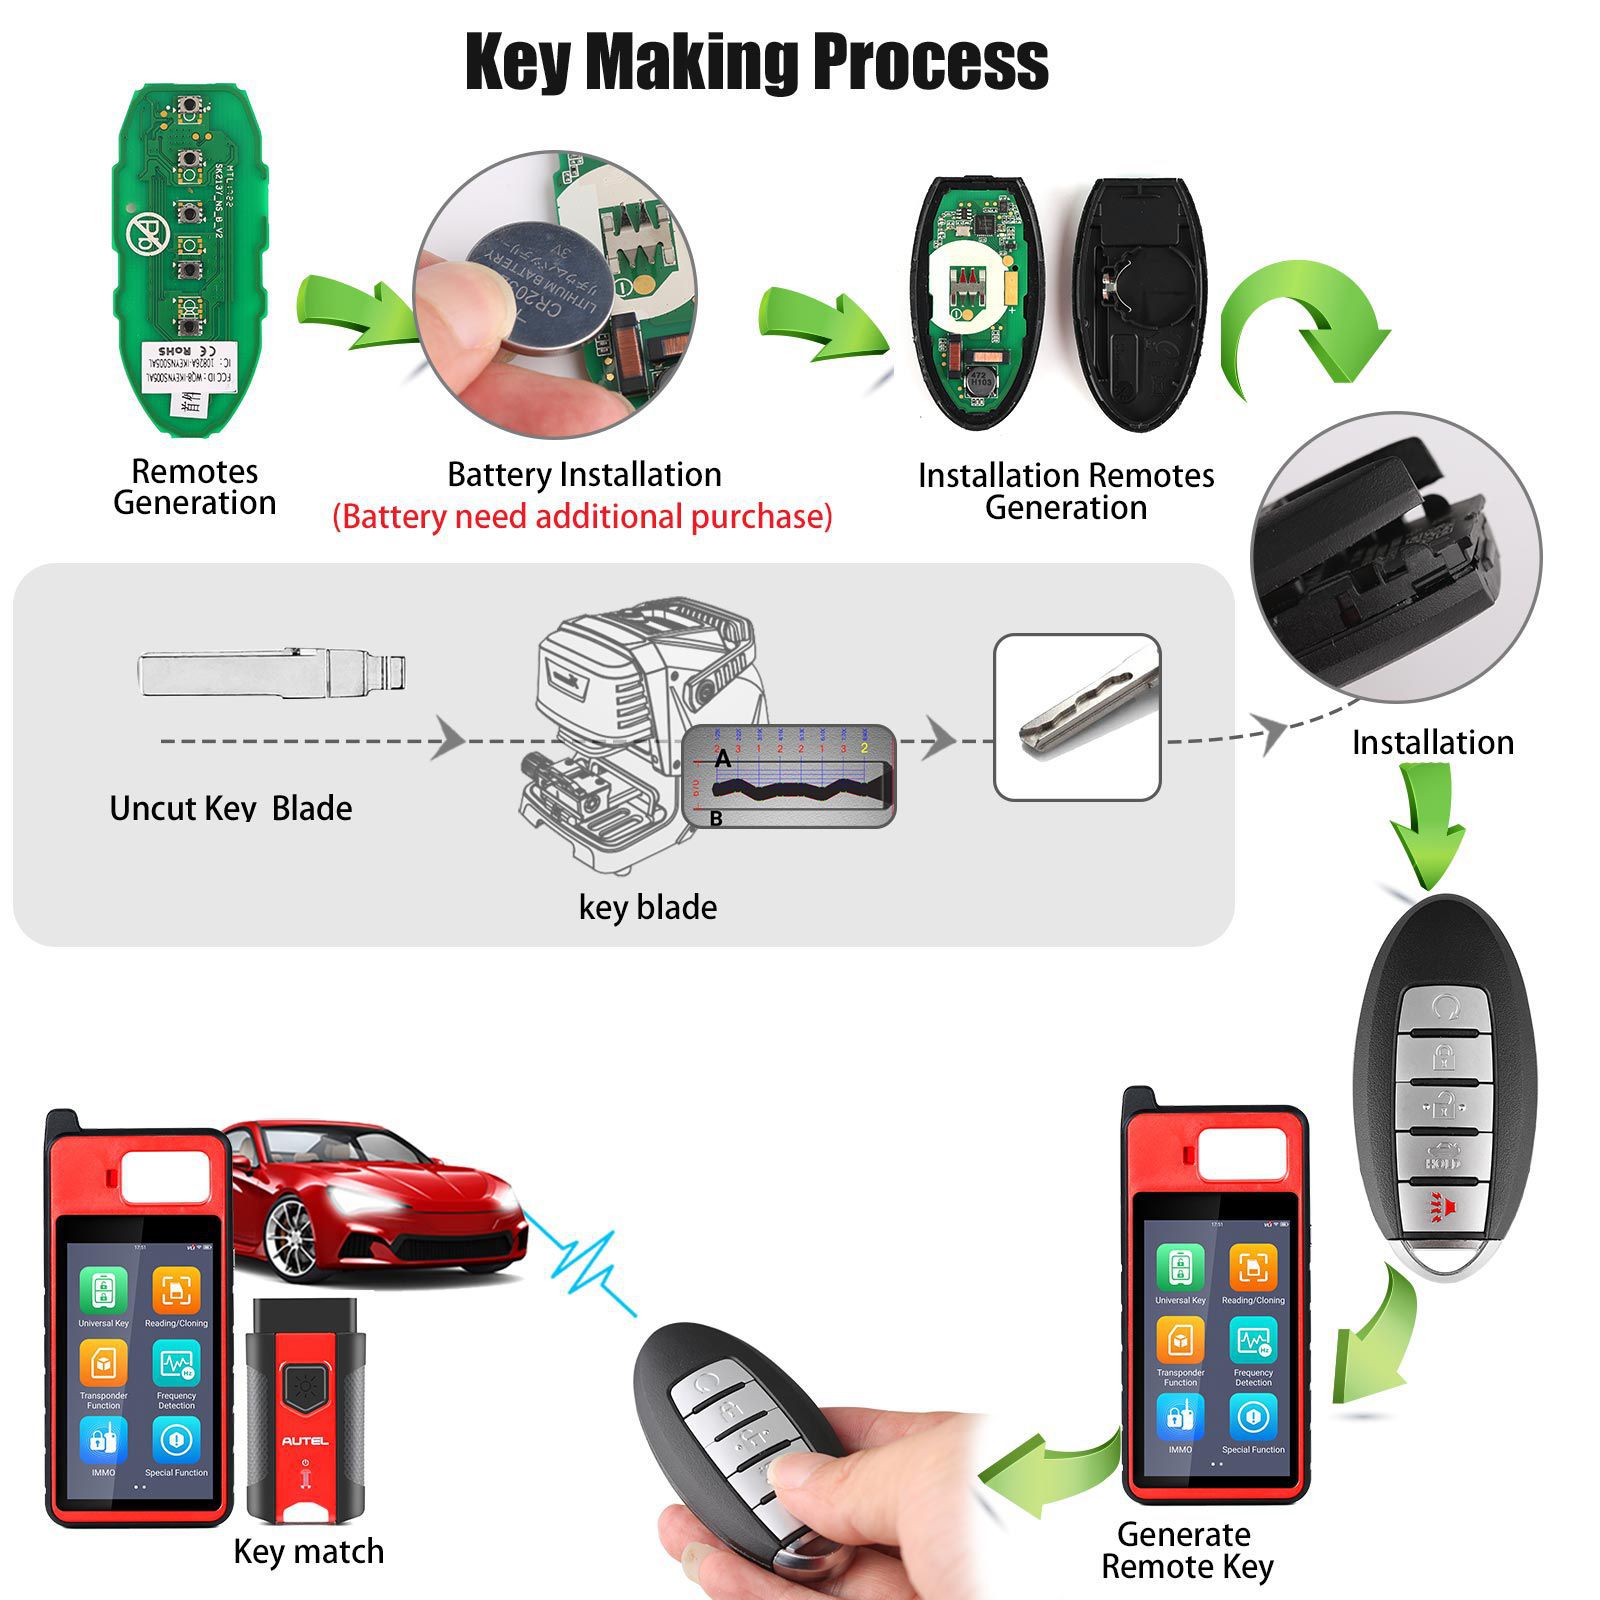 Autel ikeyns005al Nissan 5 boutons clés intelligentes universelles 5pcs / lot